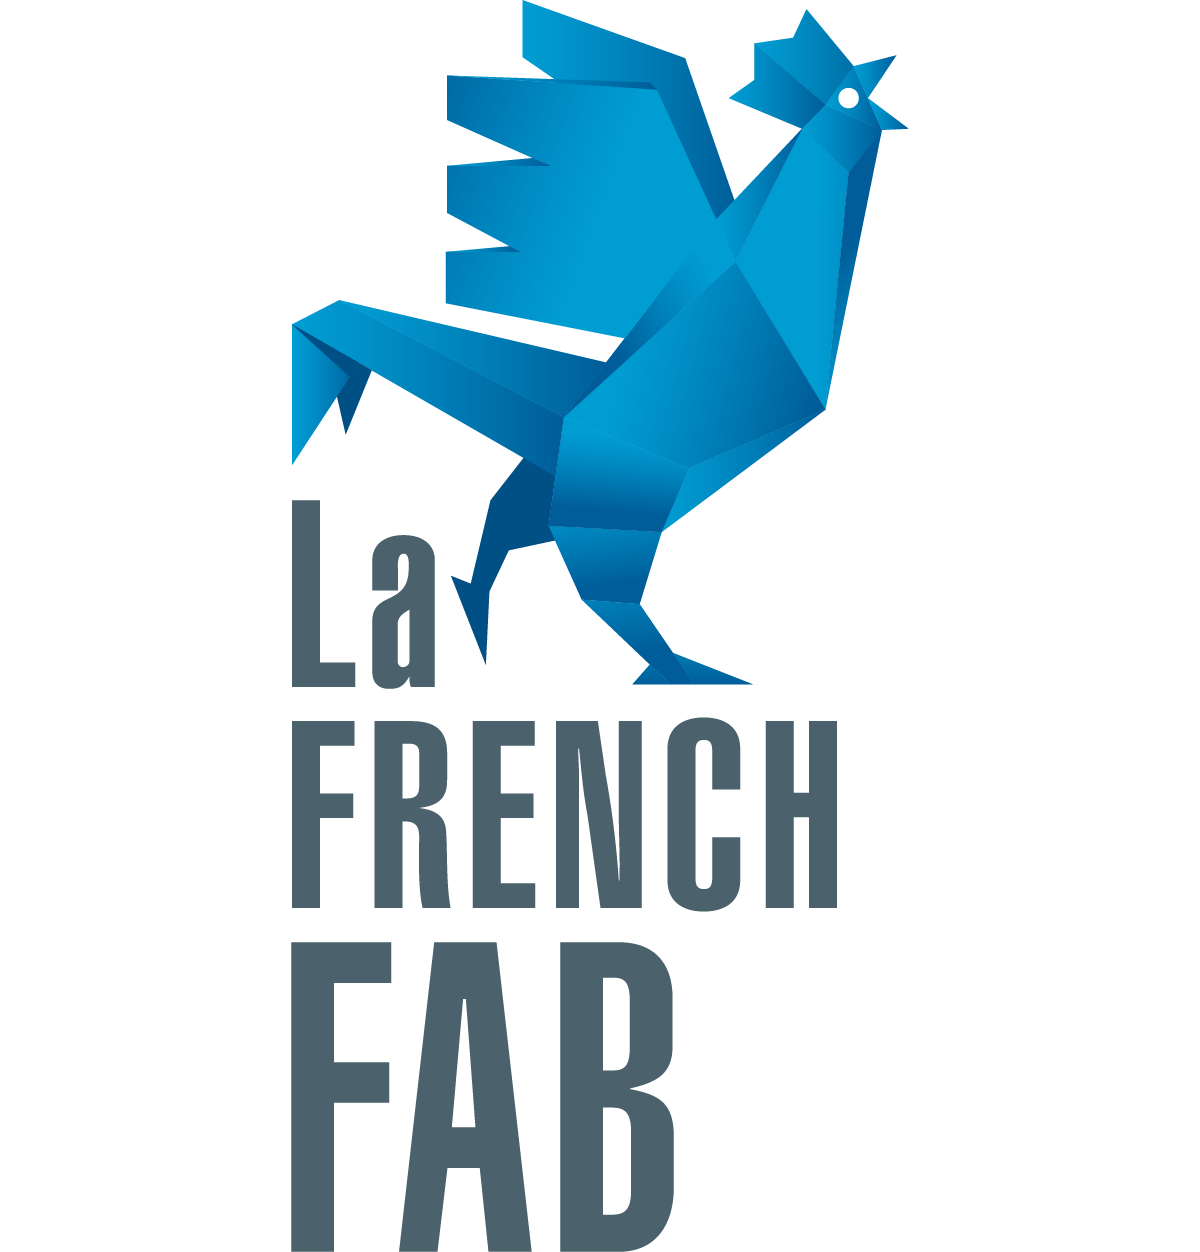 La French Fab